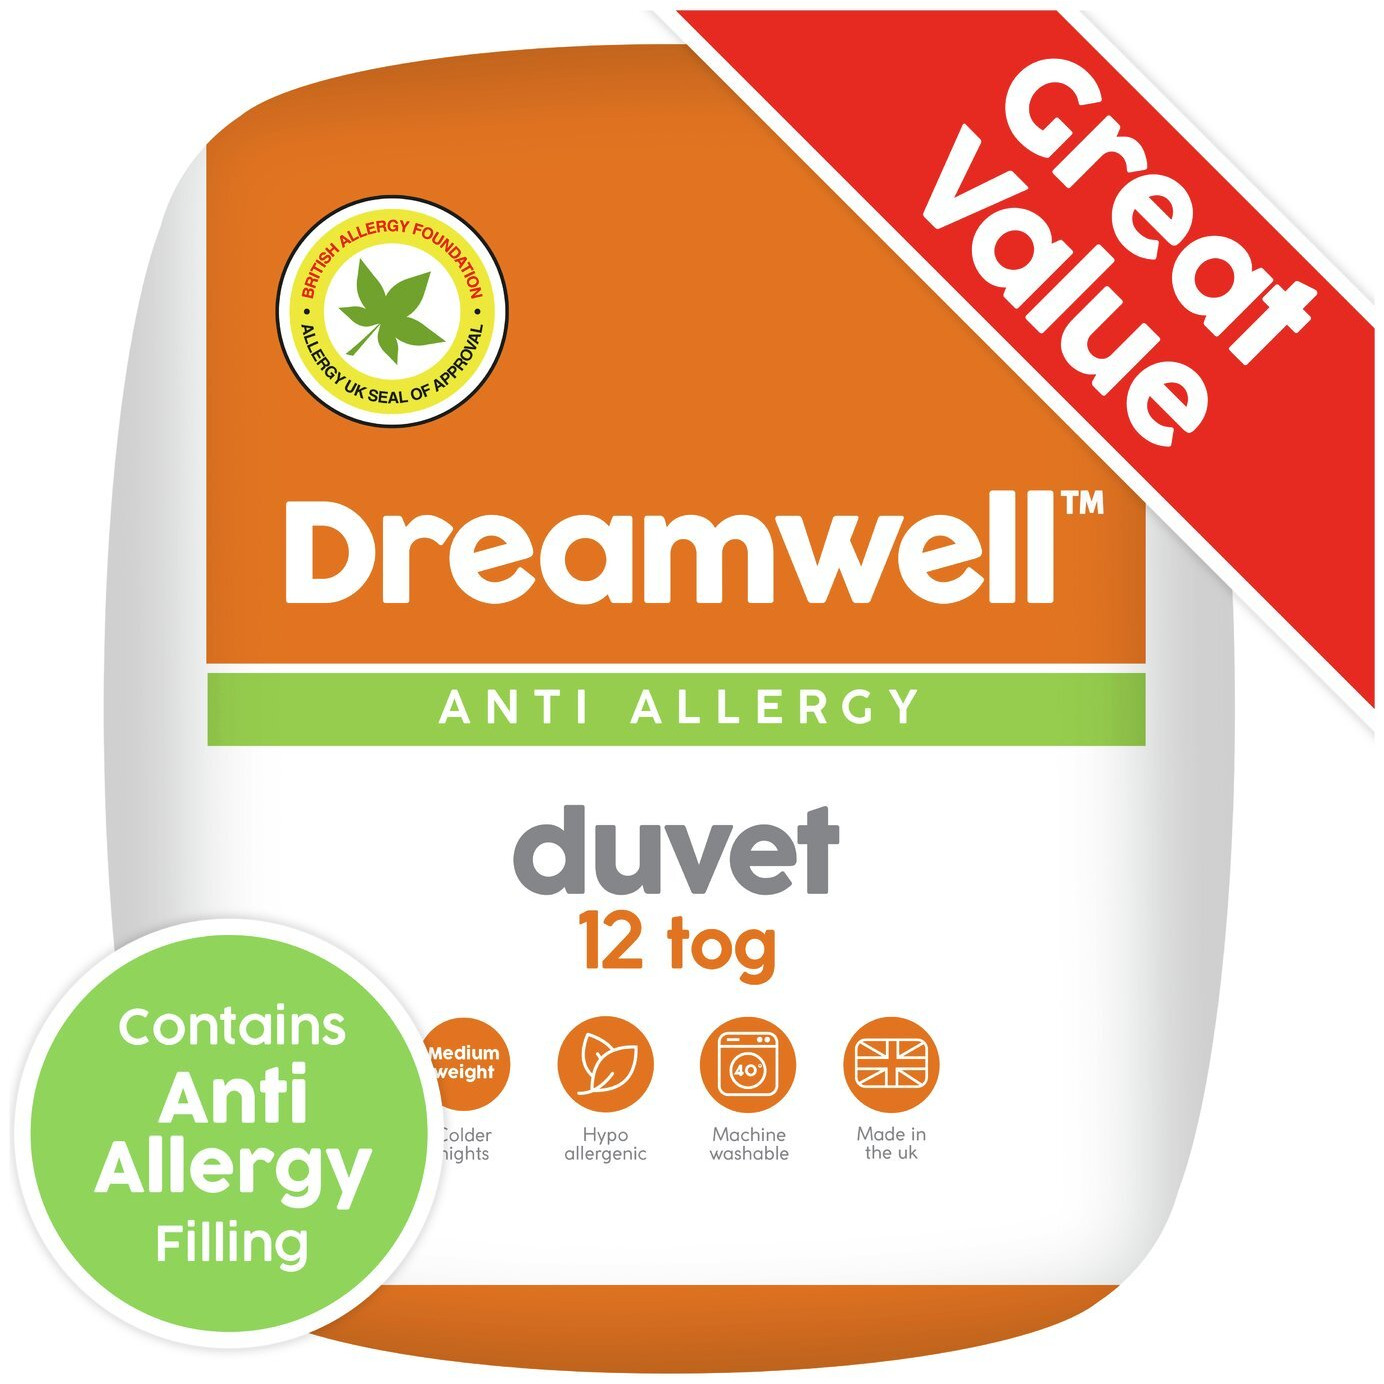 Dreamwell Anti Allergy 12 Tog Duvet - Kingsize - image 1